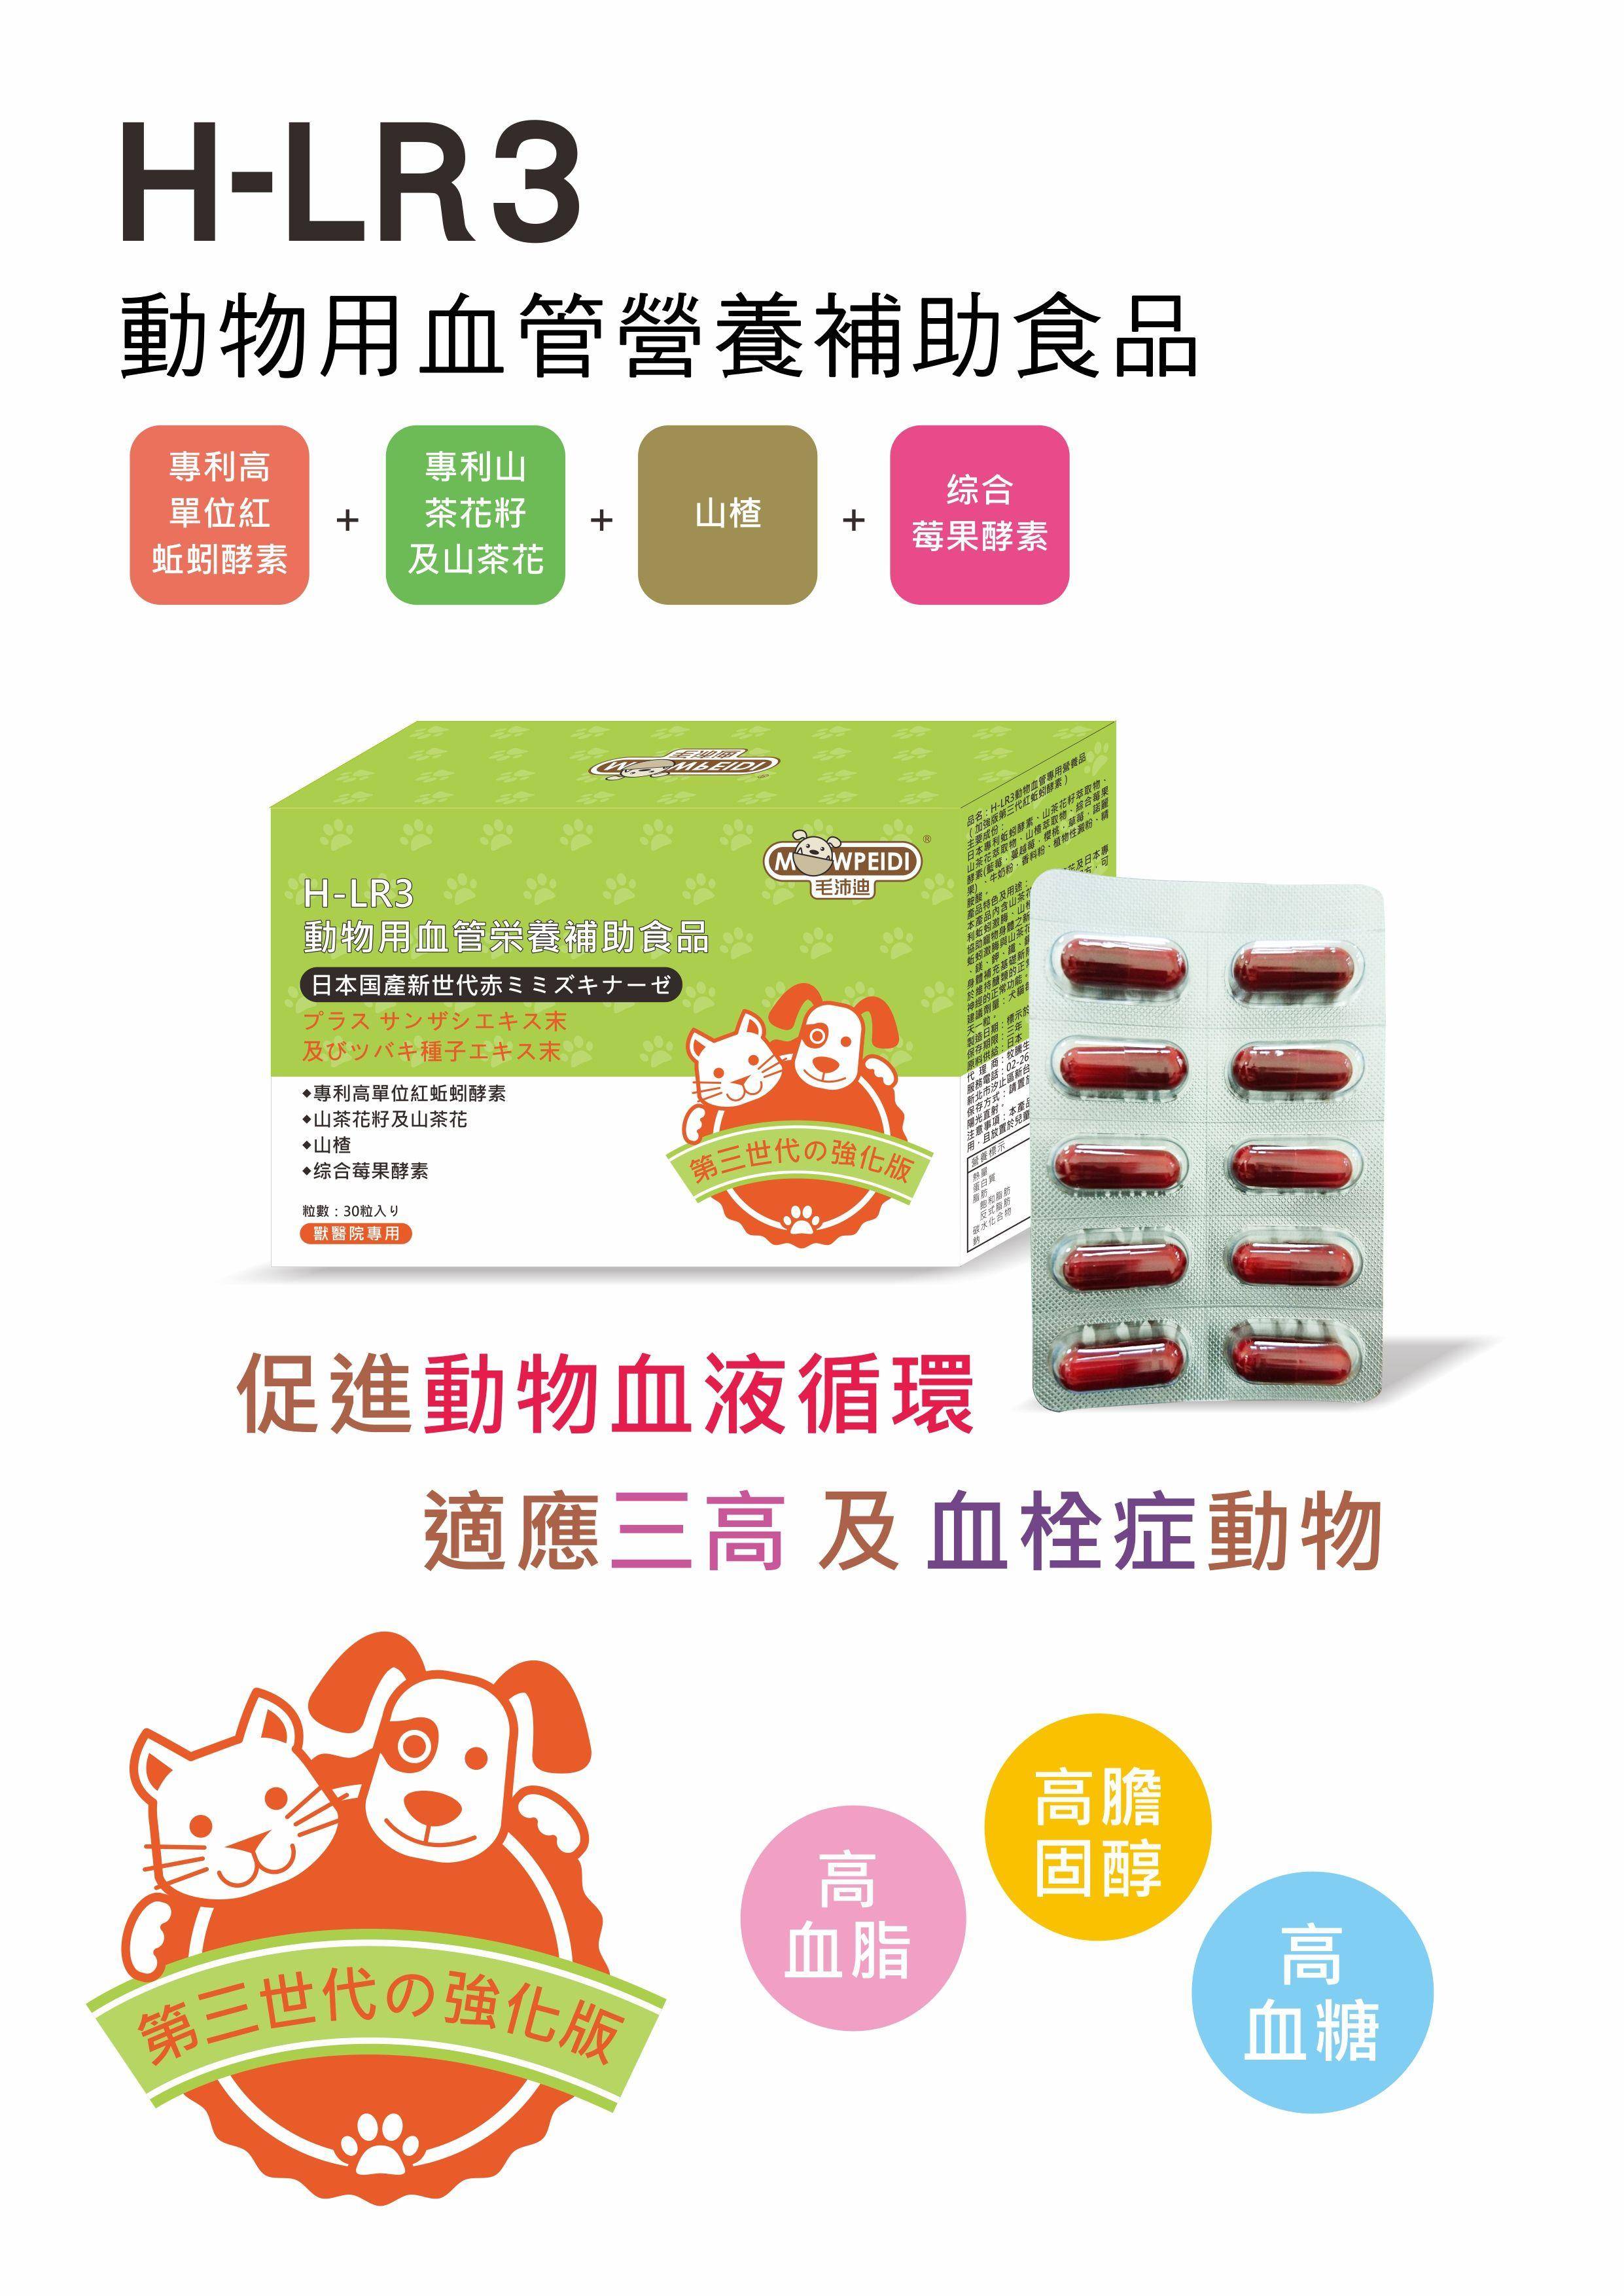 日本專利第三代紅蚯蚓酵素 牧騰生物科技股份有限公司 犬貓健康檢查 疾病基因檢測 產品項目